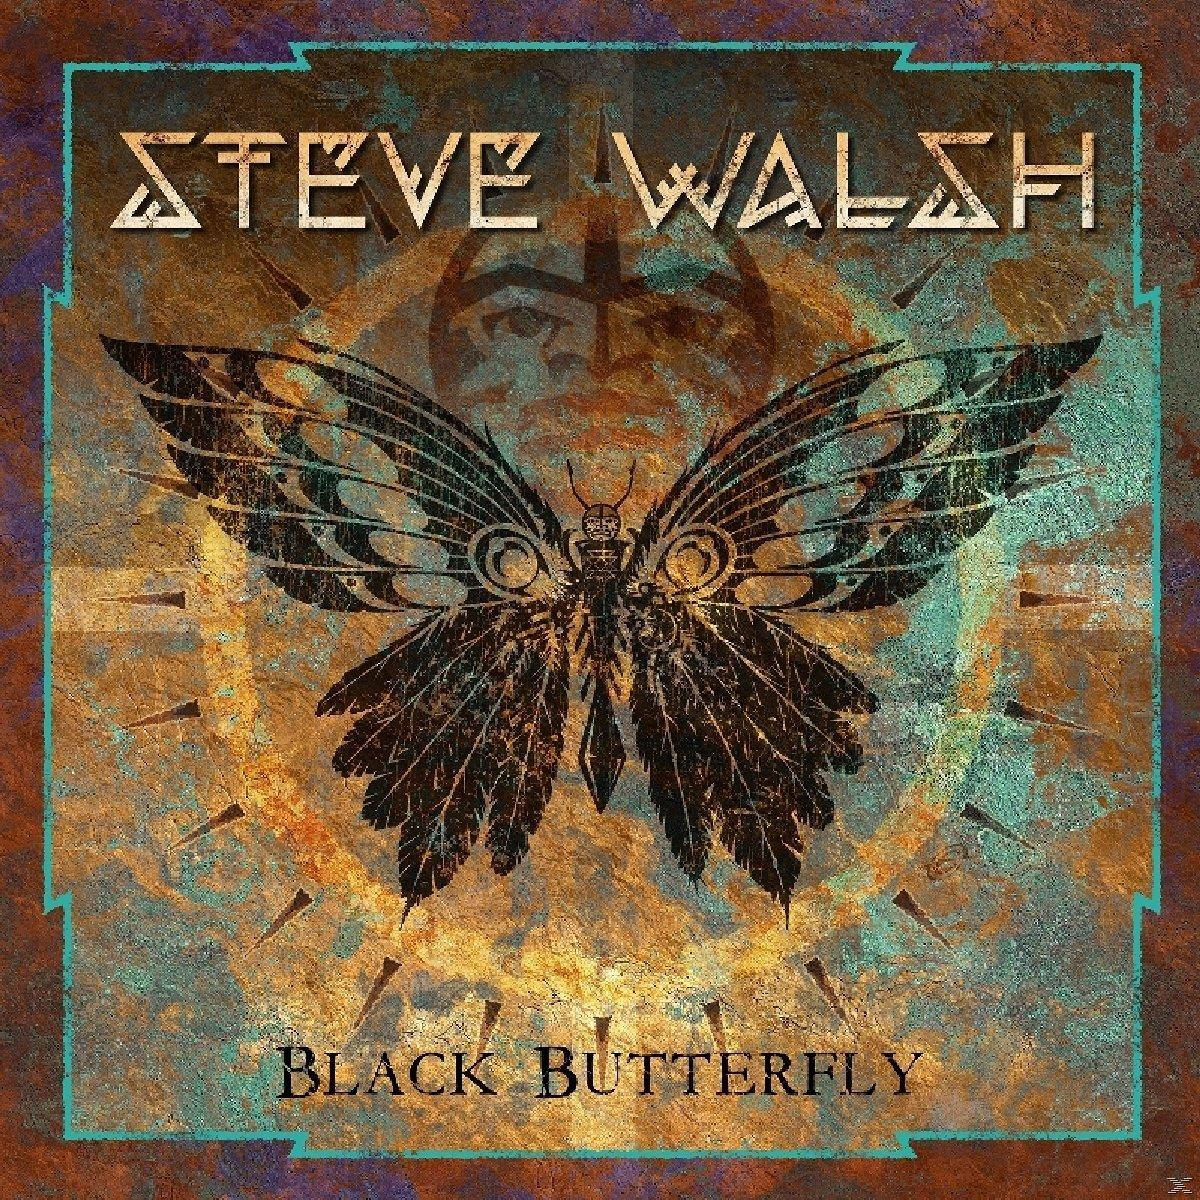 - Walsh (CD) Butterfly - Steve Black